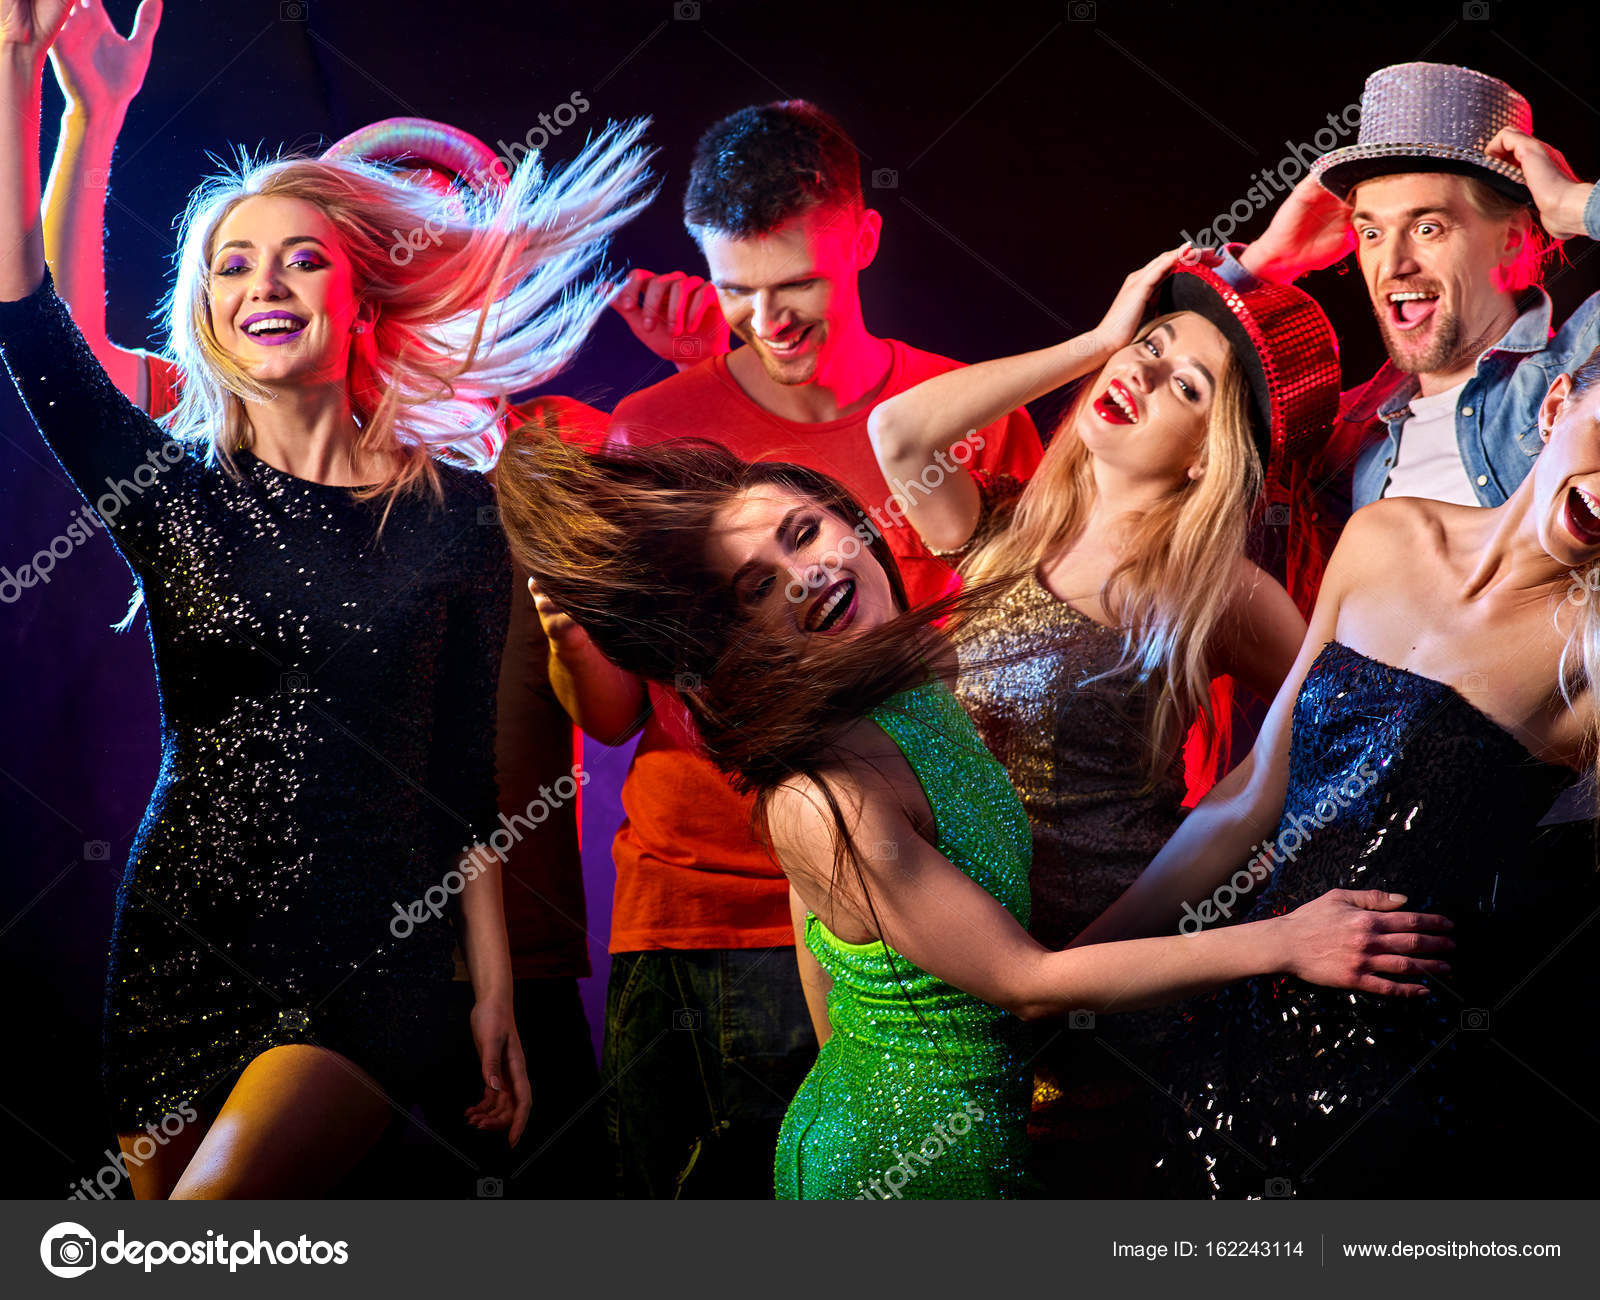 Tanzparty mit Tanzgruppen und Discokugel. - Stockfotografie